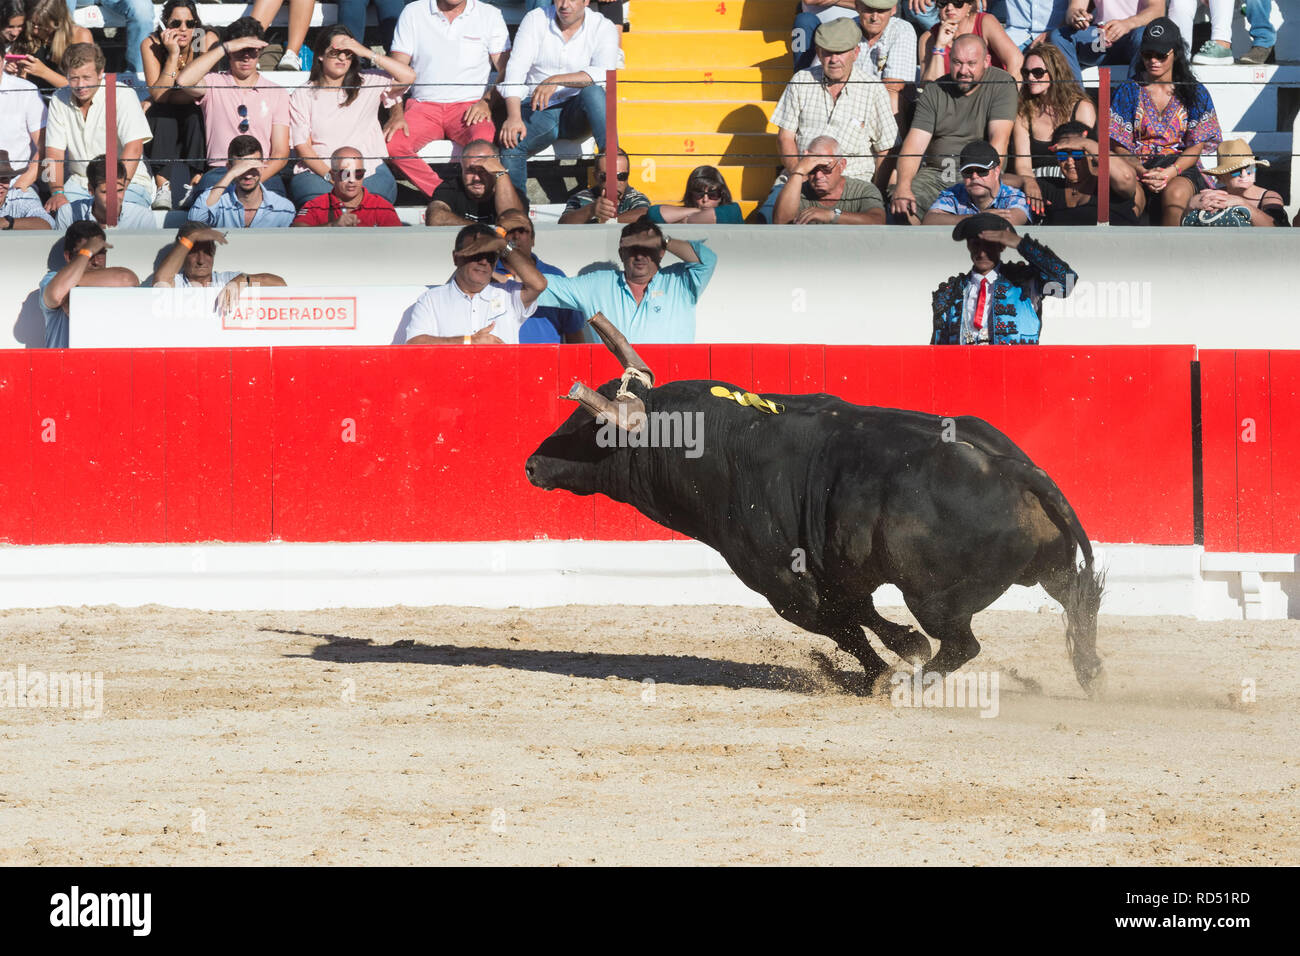 Bullfight in Alcochete. Bull running in the arena, Bulls are not killed during the bullfight, Alcochete, Setubal Province, Portugal Stock Photo